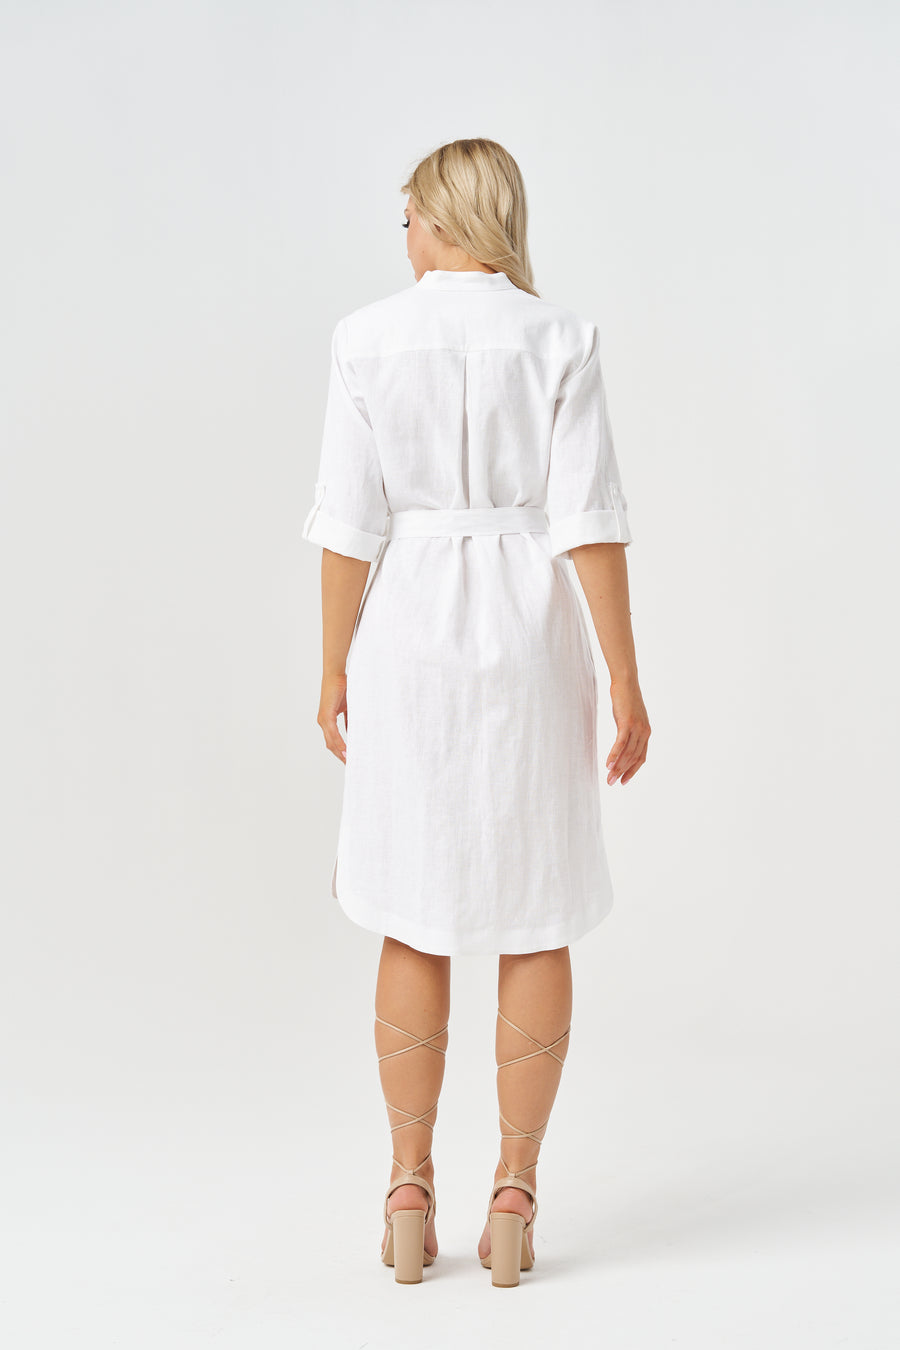 ANDREA LINEN WHITE DRESS